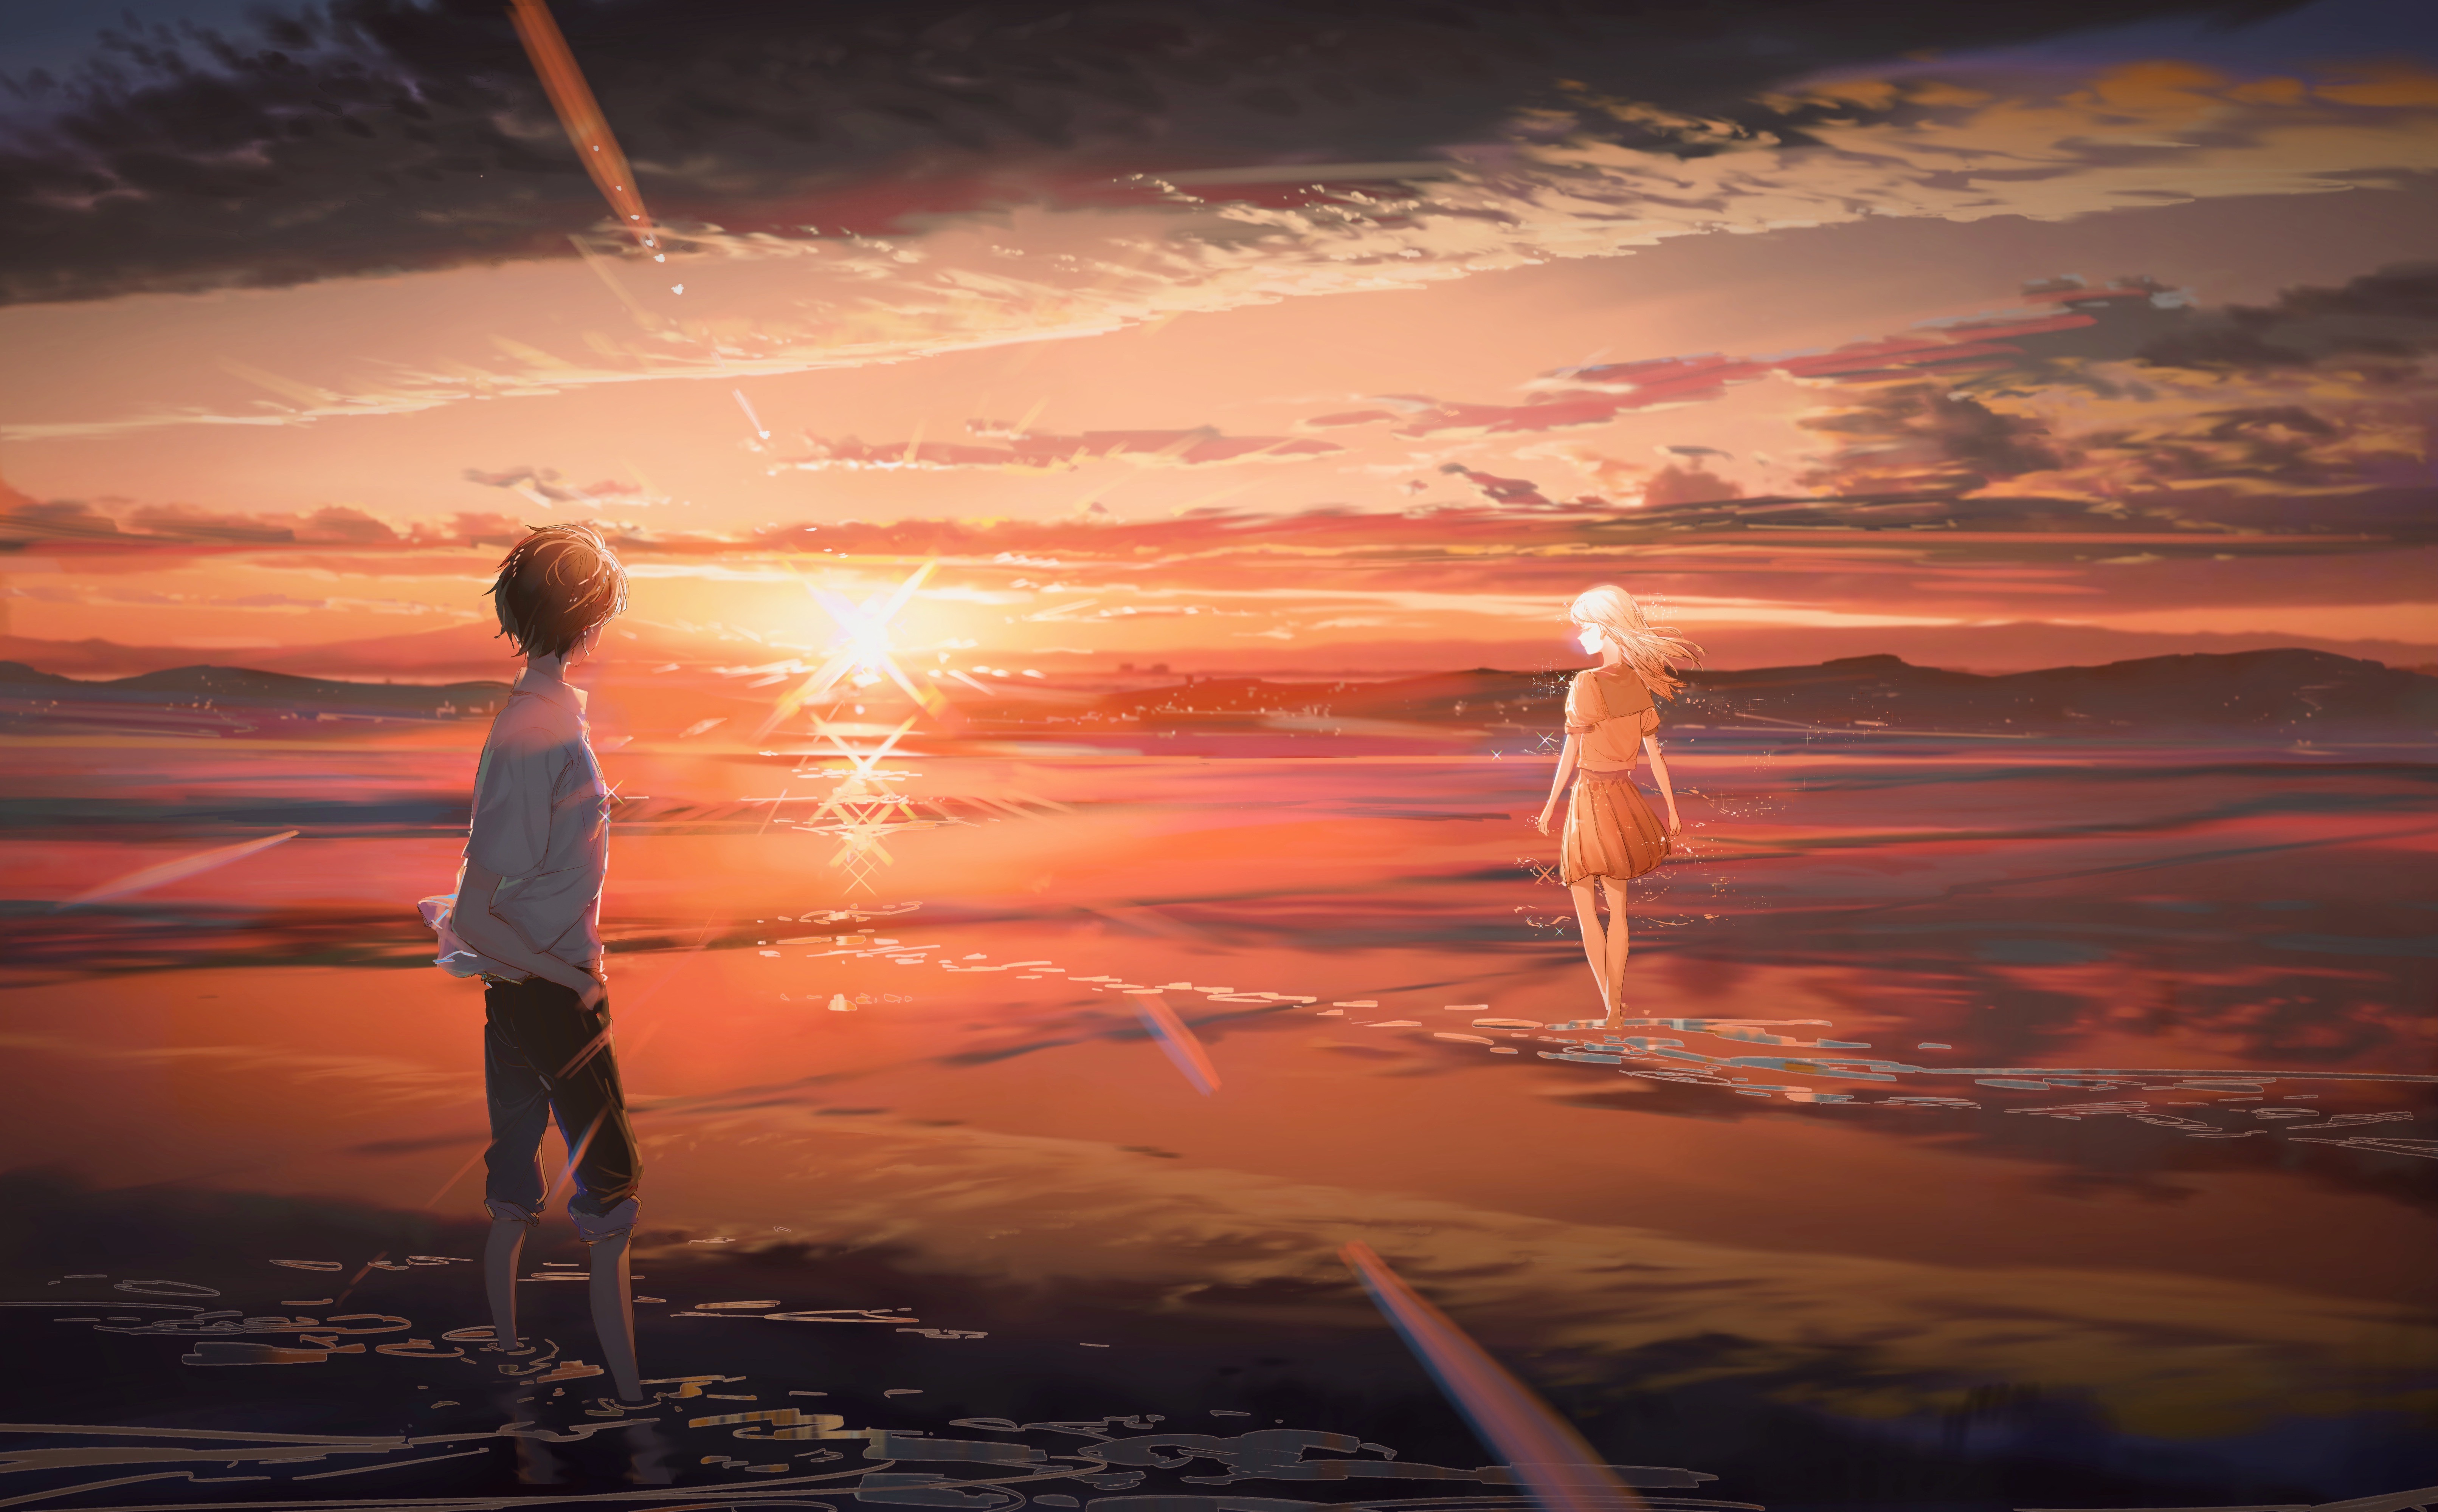 Anime Sunrise 4k Ultra HD Wallpaper by ashorz